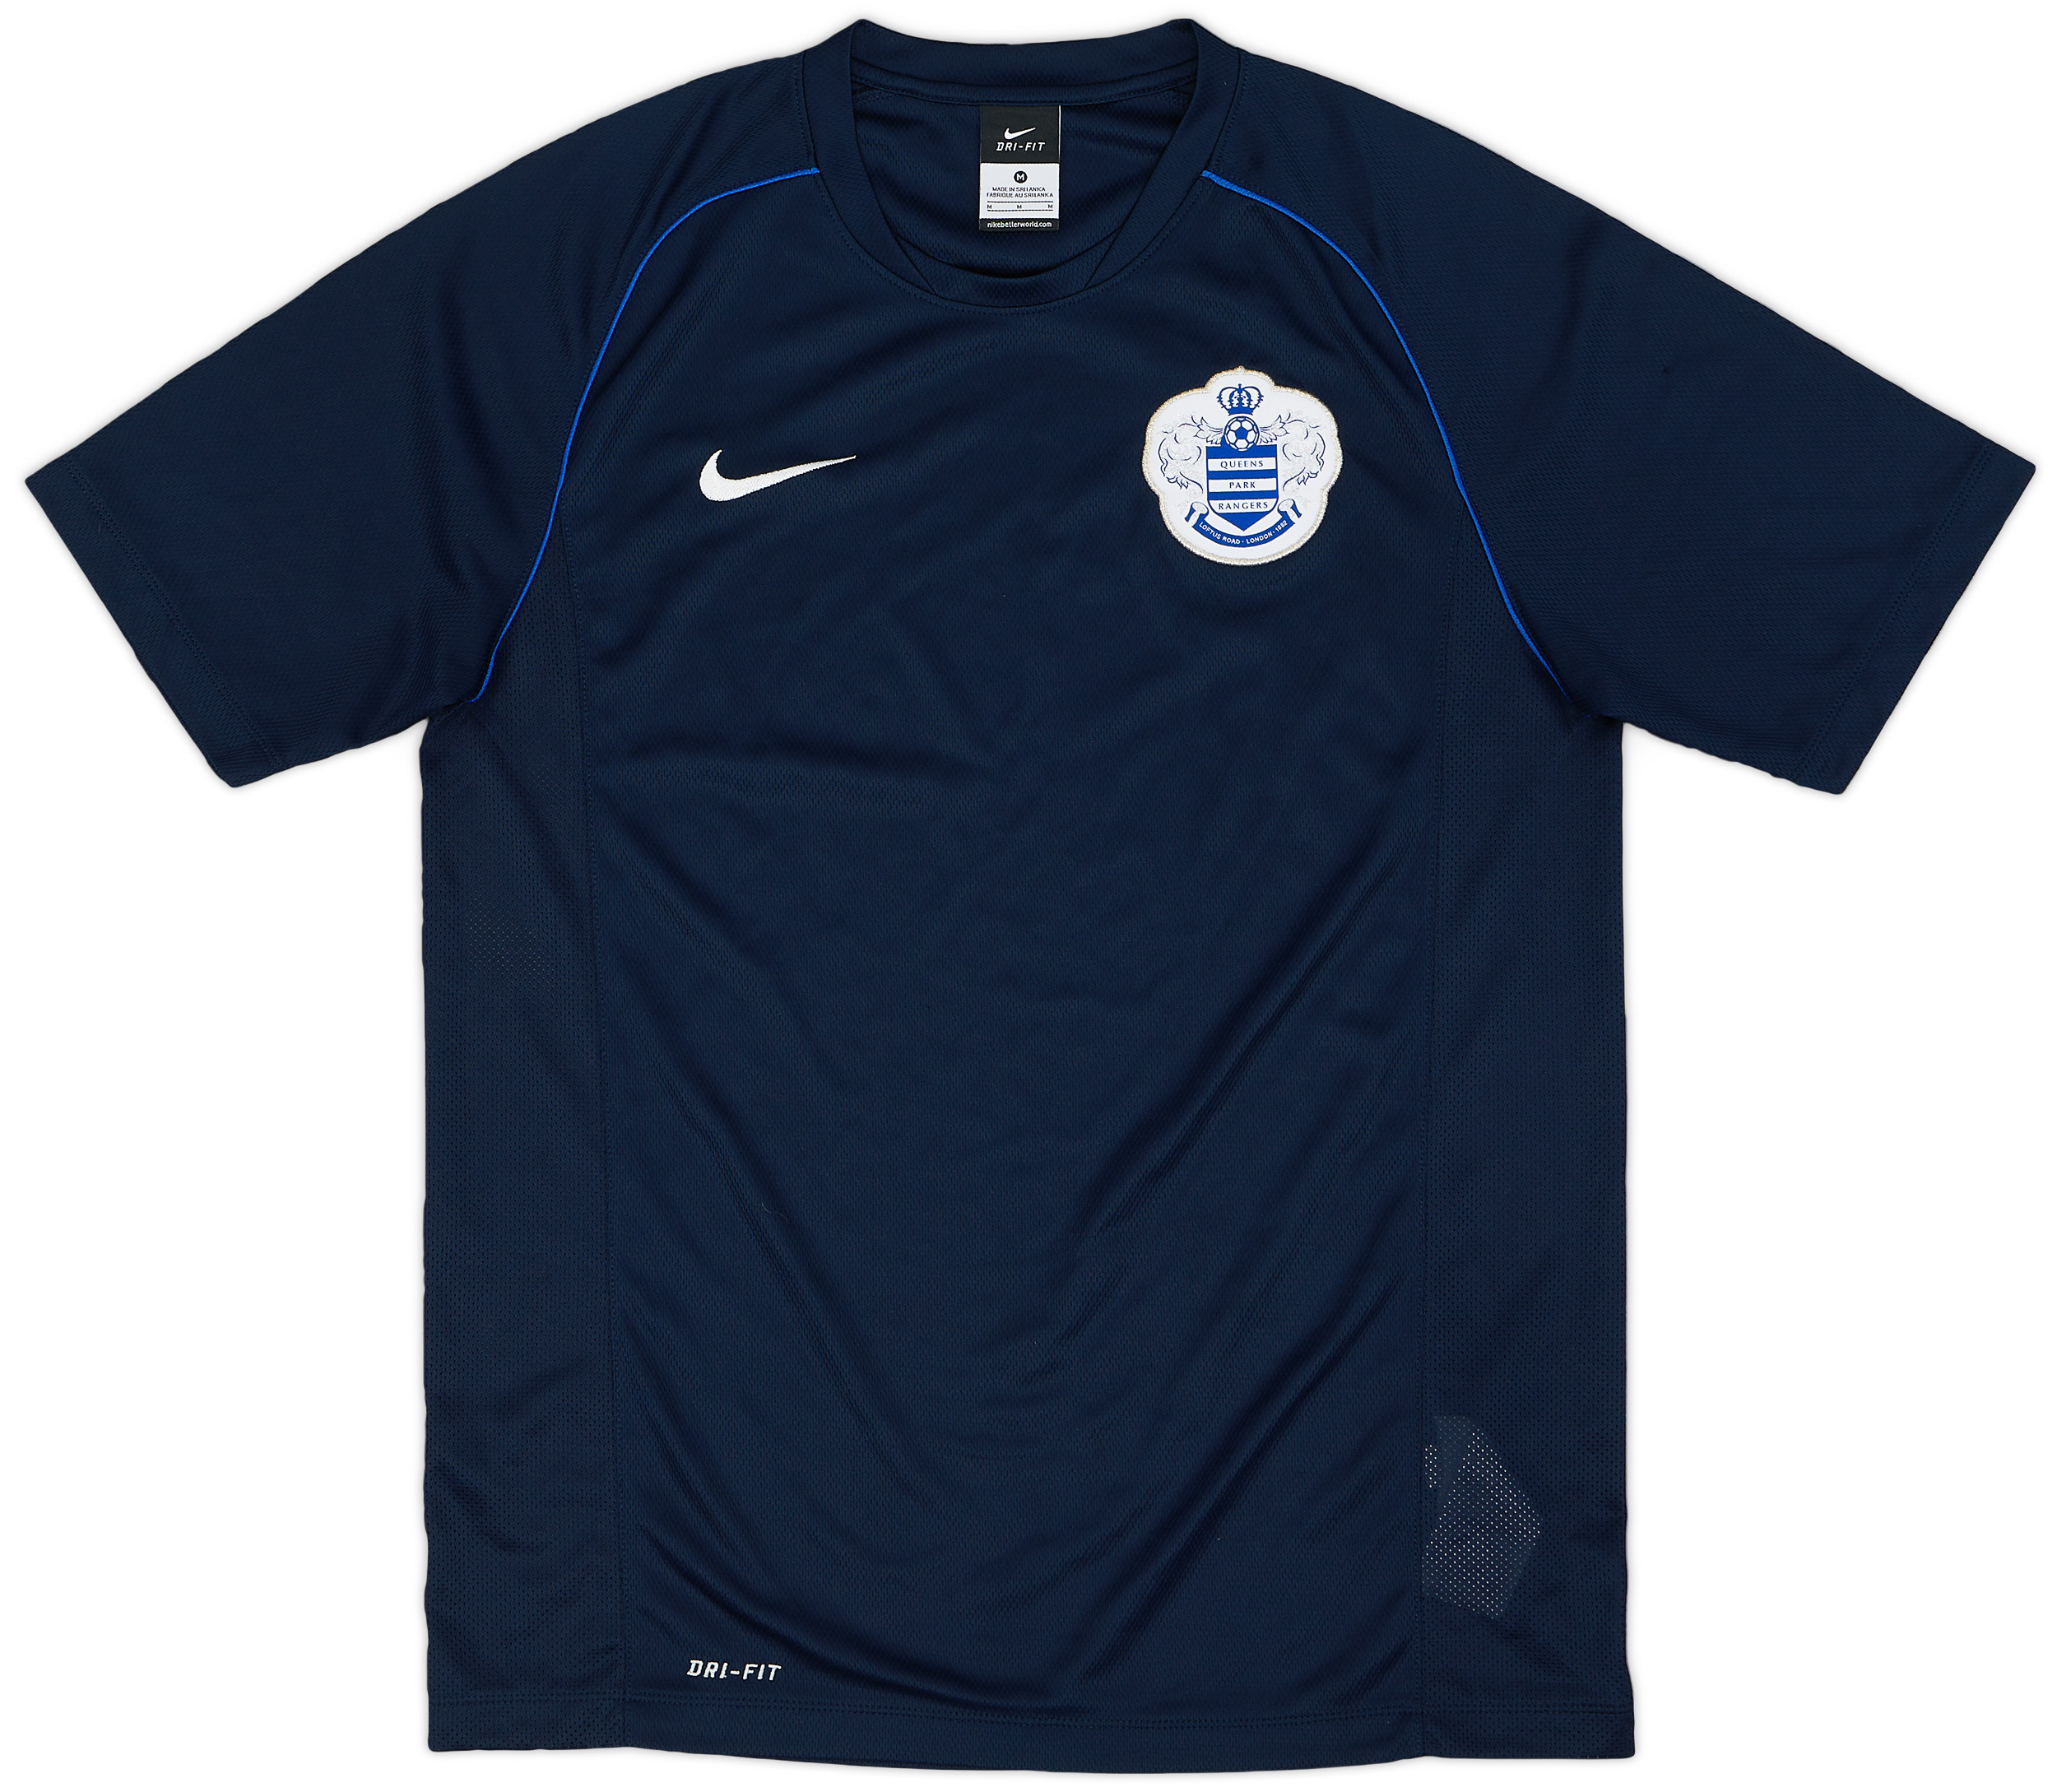 2014-15 QPR Nike Training Shirt - 9/10 - (M)